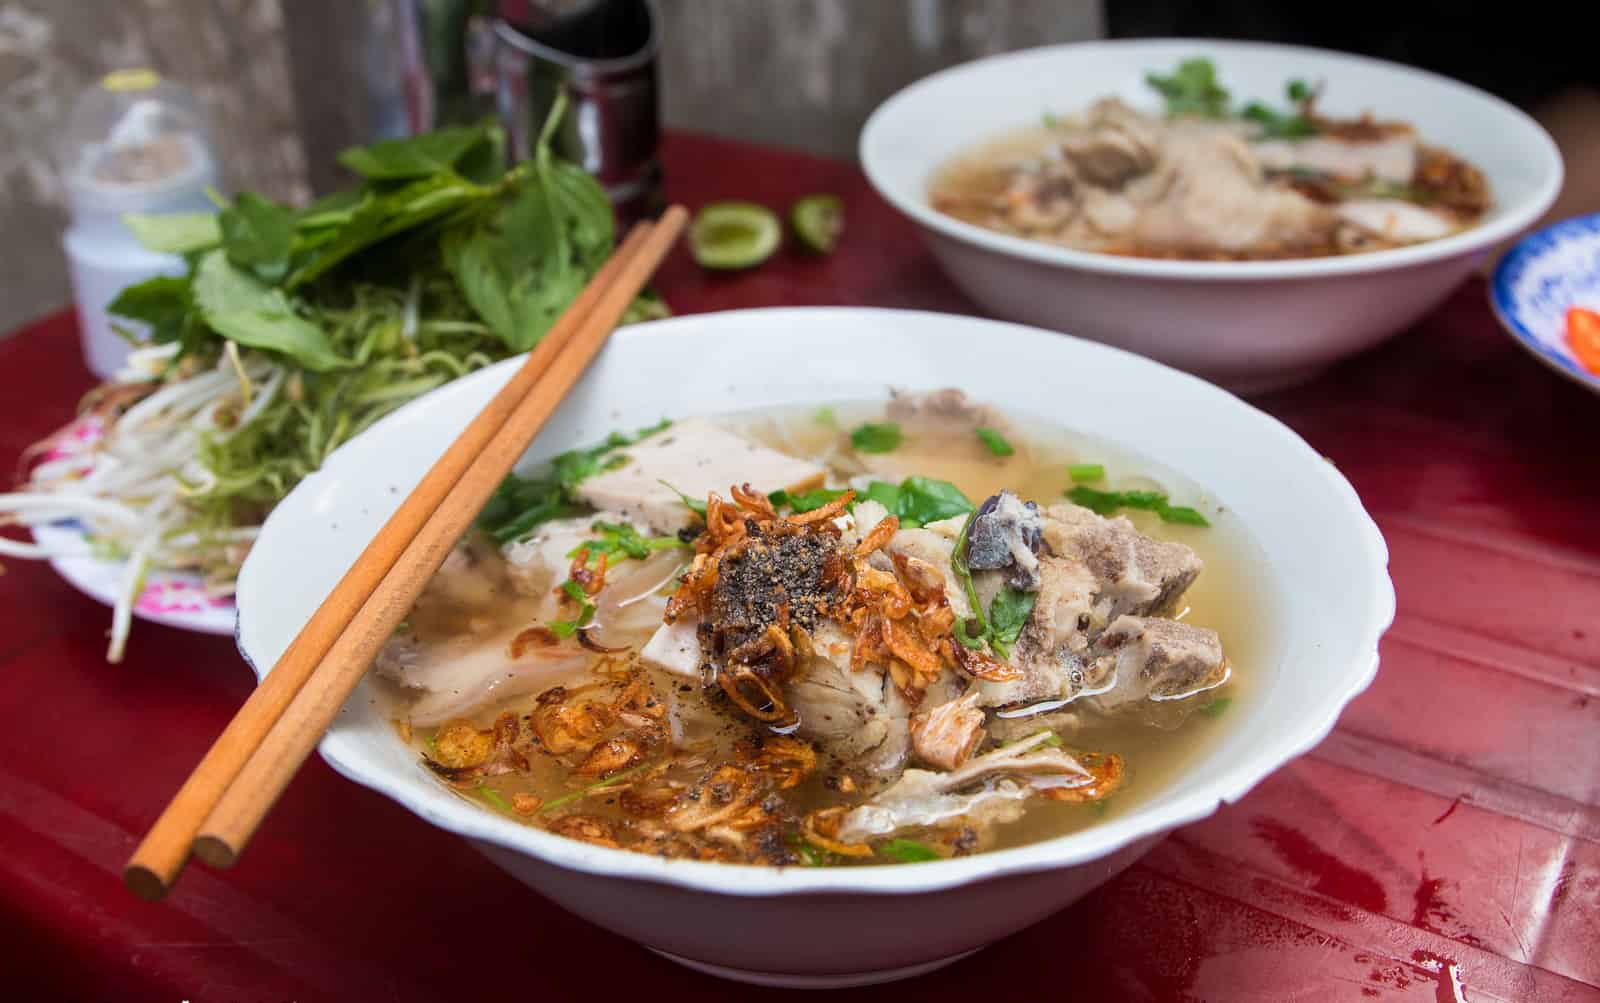 Reasons to eat street food in Vietnam